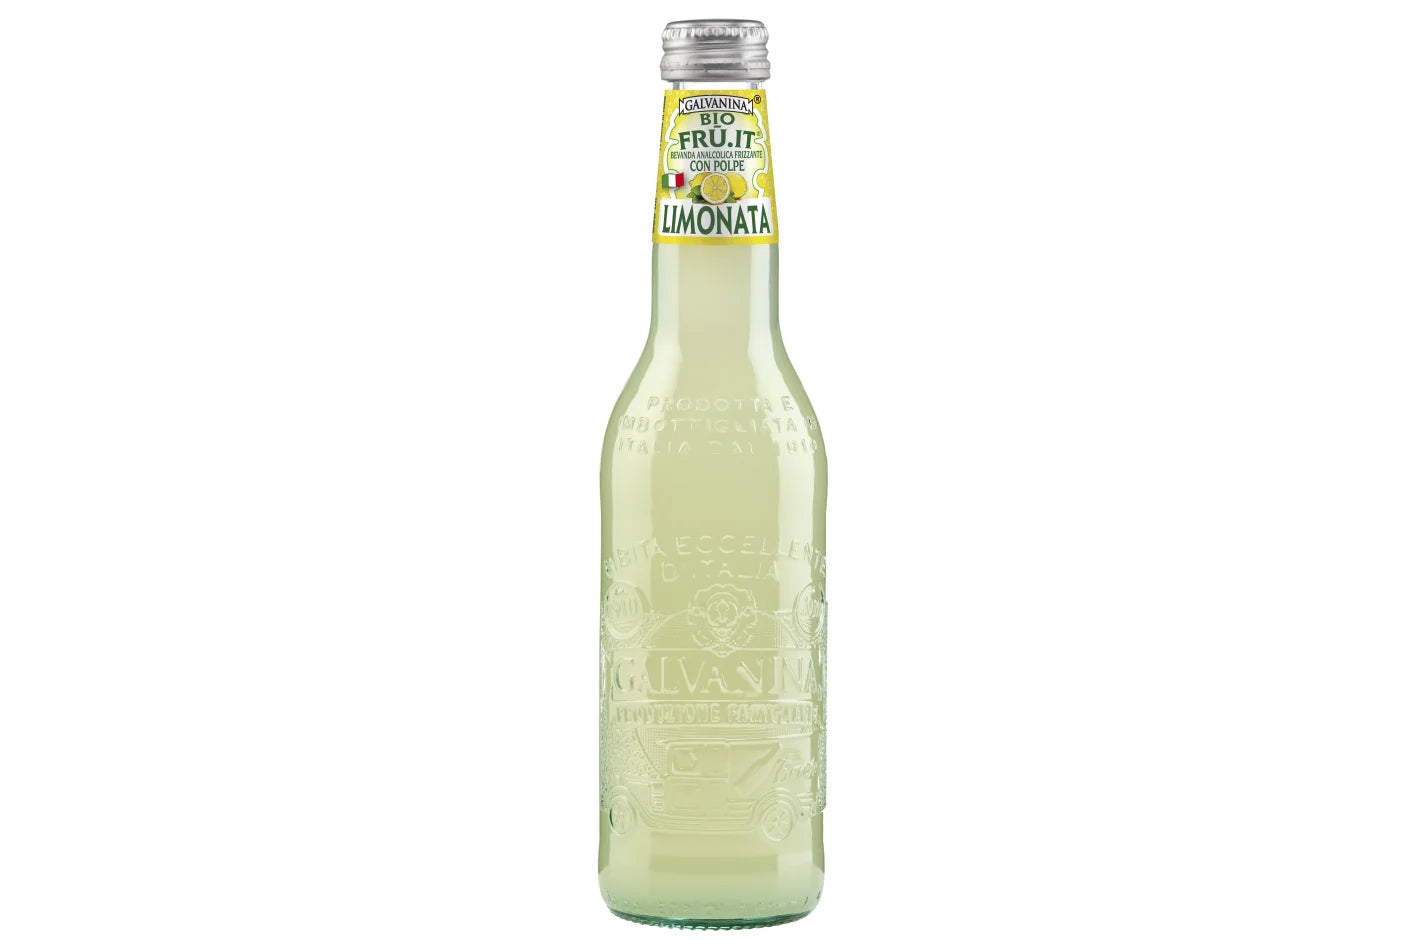 Brug Galvanina Limonata - Økologisk Italiensk Sodavand (35,5cl) til en forbedret oplevelse